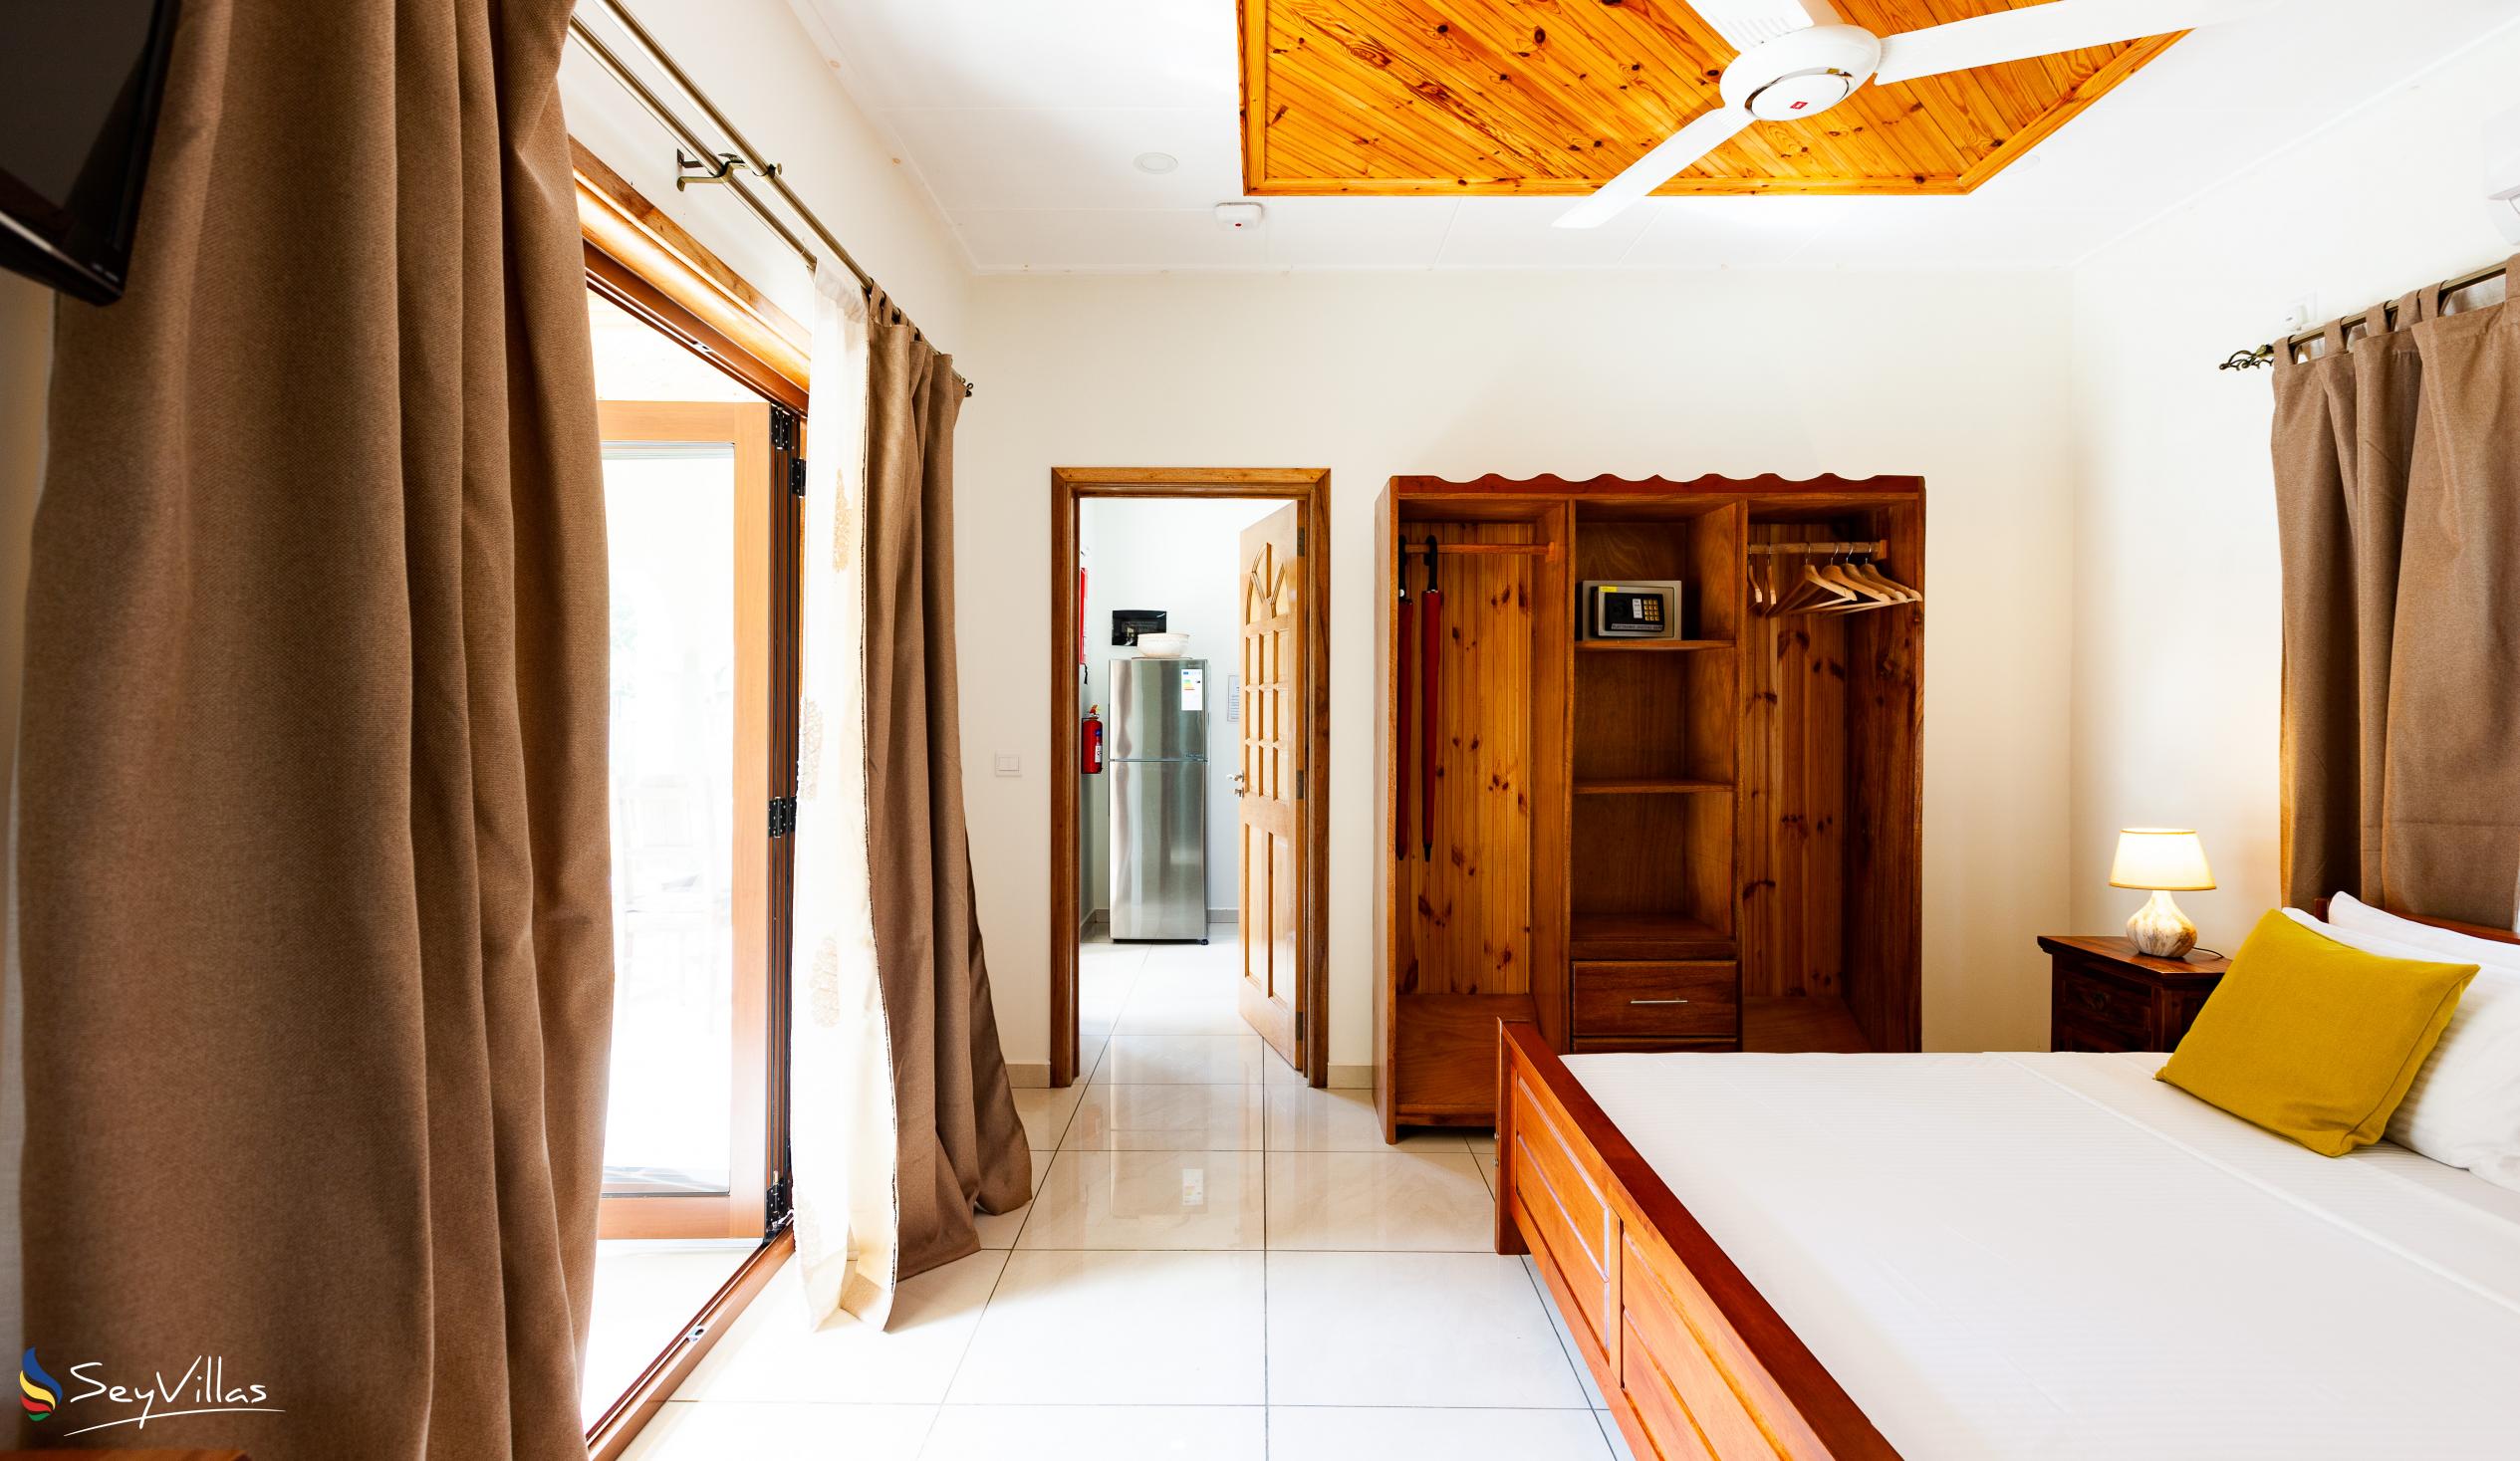 Photo 22: Maison Ed-Elle - 1-Bedroom Apartment - La Digue (Seychelles)